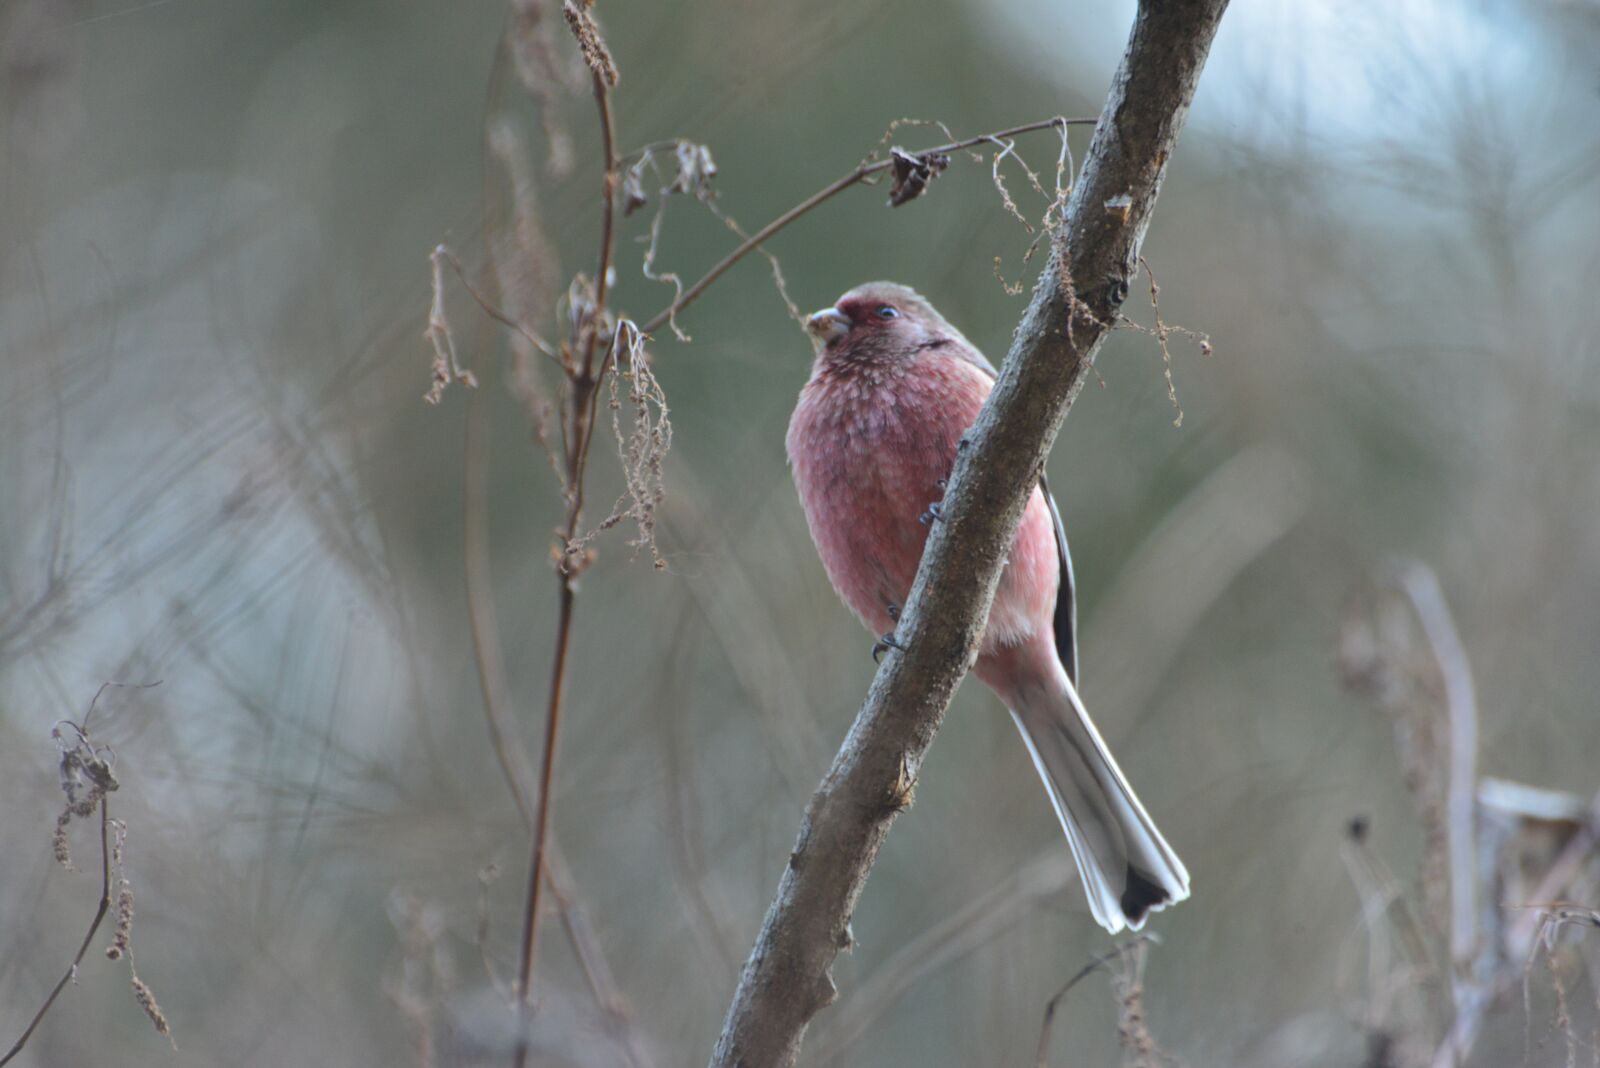 Nikon D800 sample photo. Natural, wild animals, bird photography